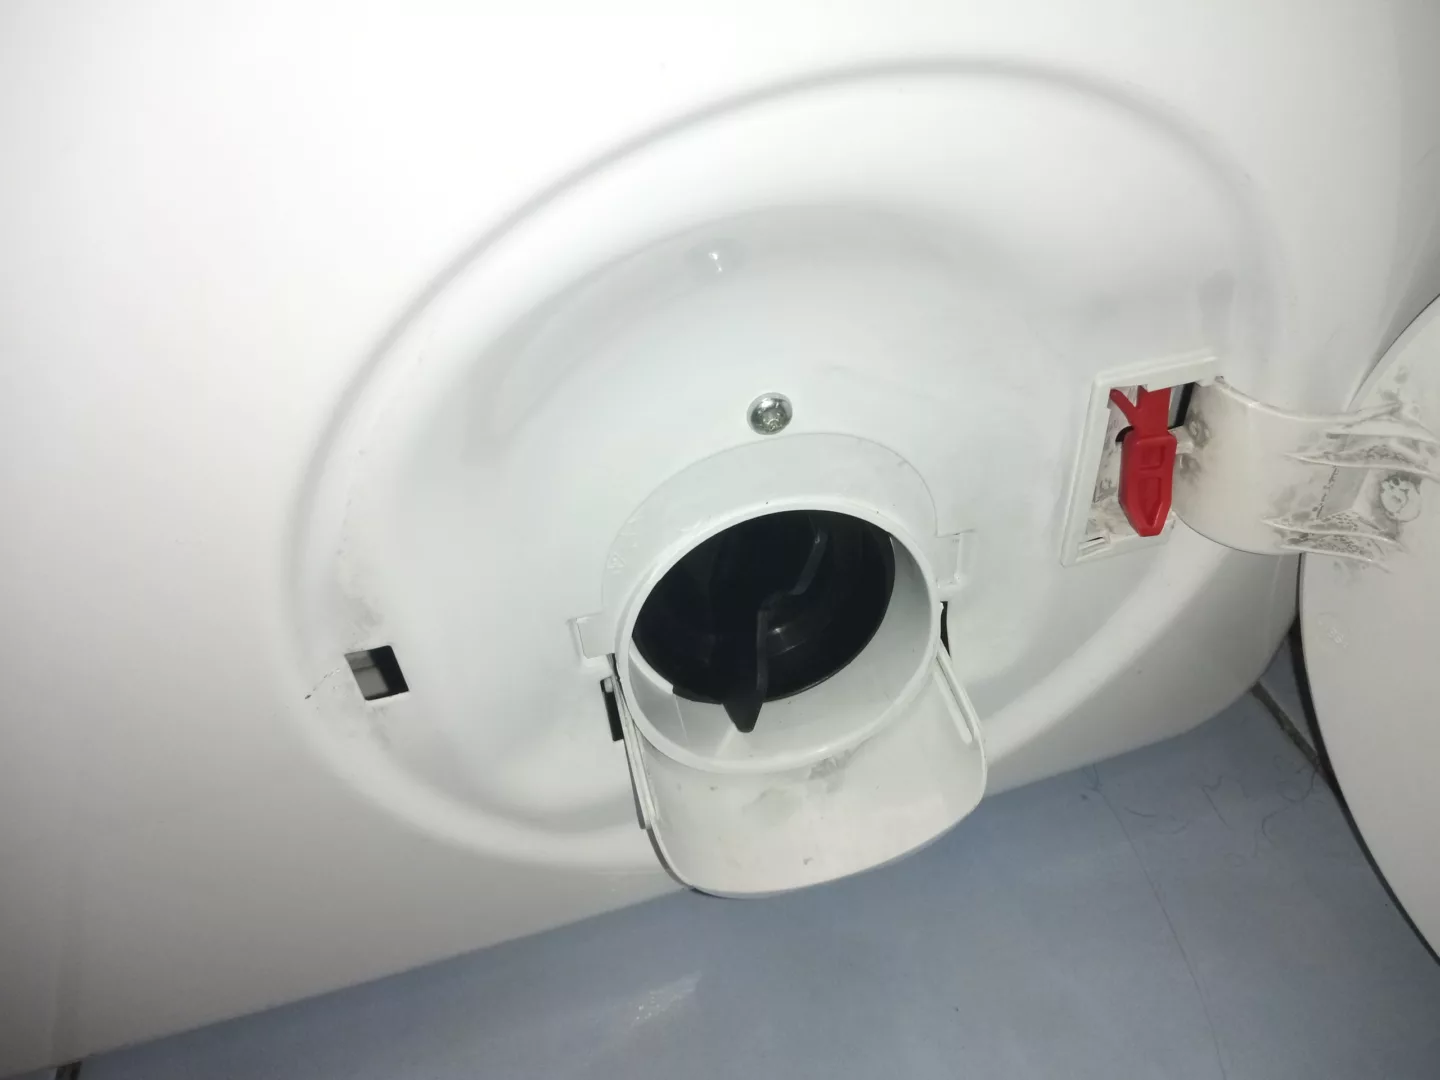 Odblokować drzwi awaryjnie czerwonym cięgnem umieszczonym obok filtra pompy, pociągając go w dół - wymiana silnika pompy pralki Gorenje PS1511120 P62S3P